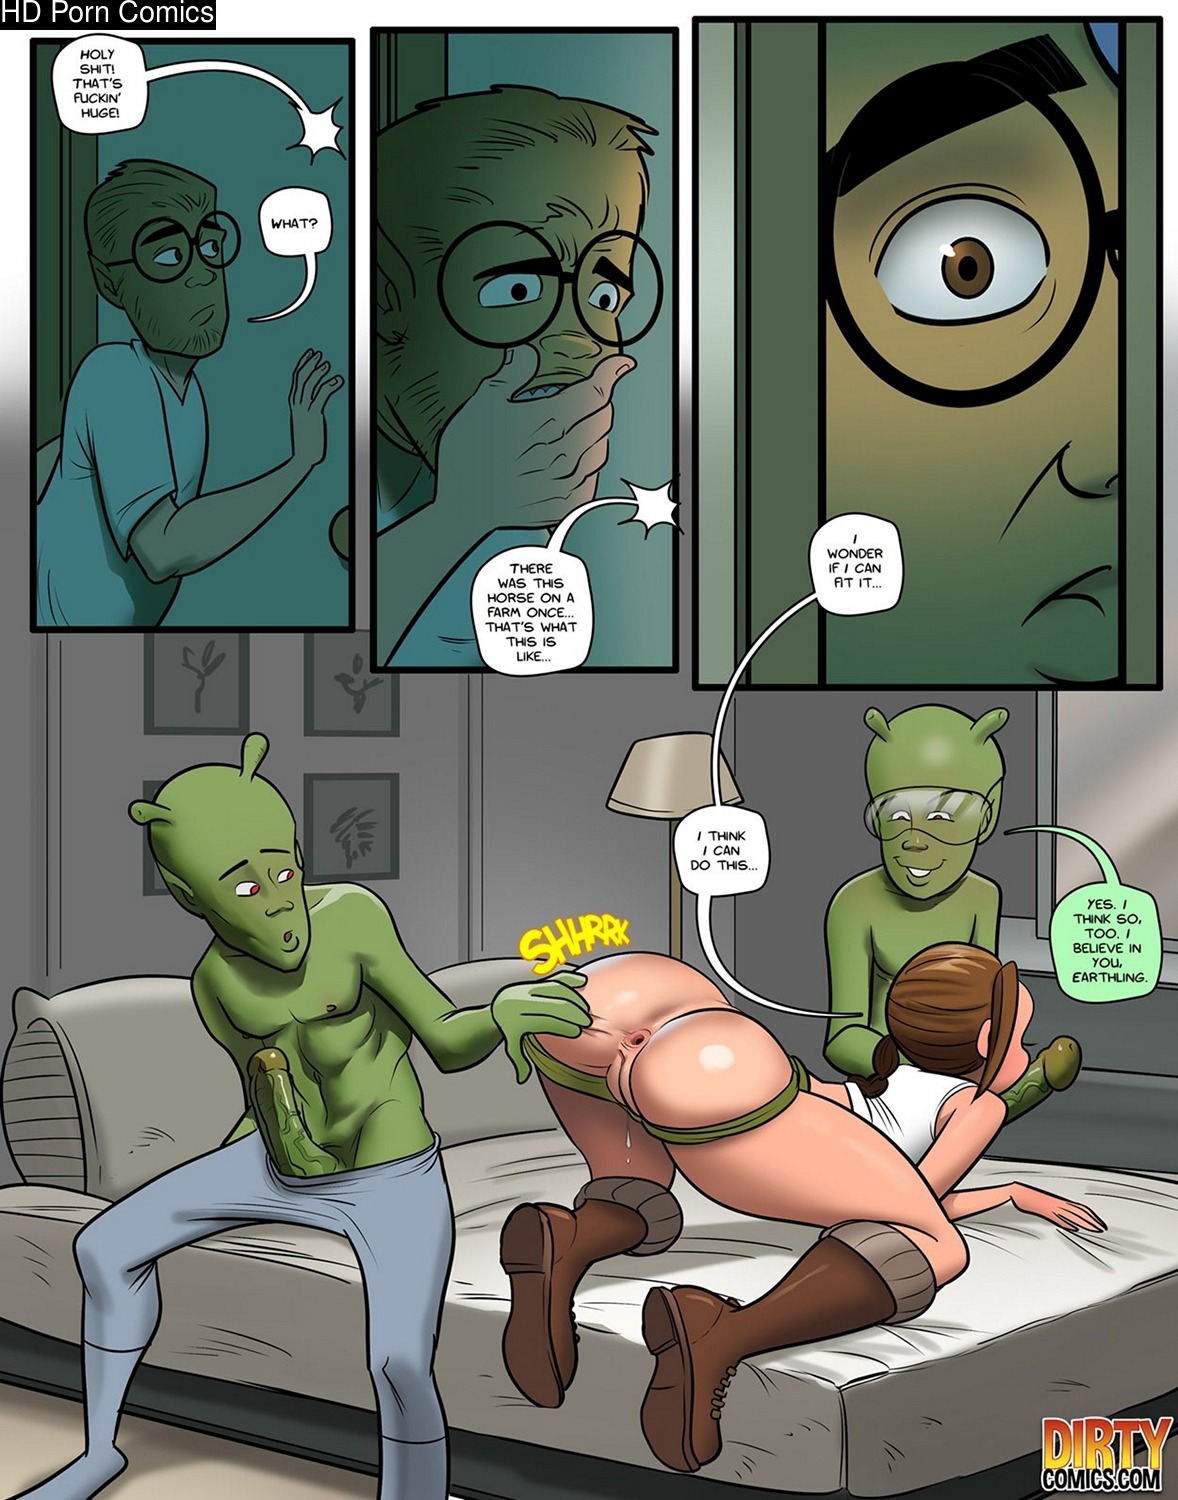 Halloween Cartoons Sex - Saving Halloween comic porn - HD Porn Comics